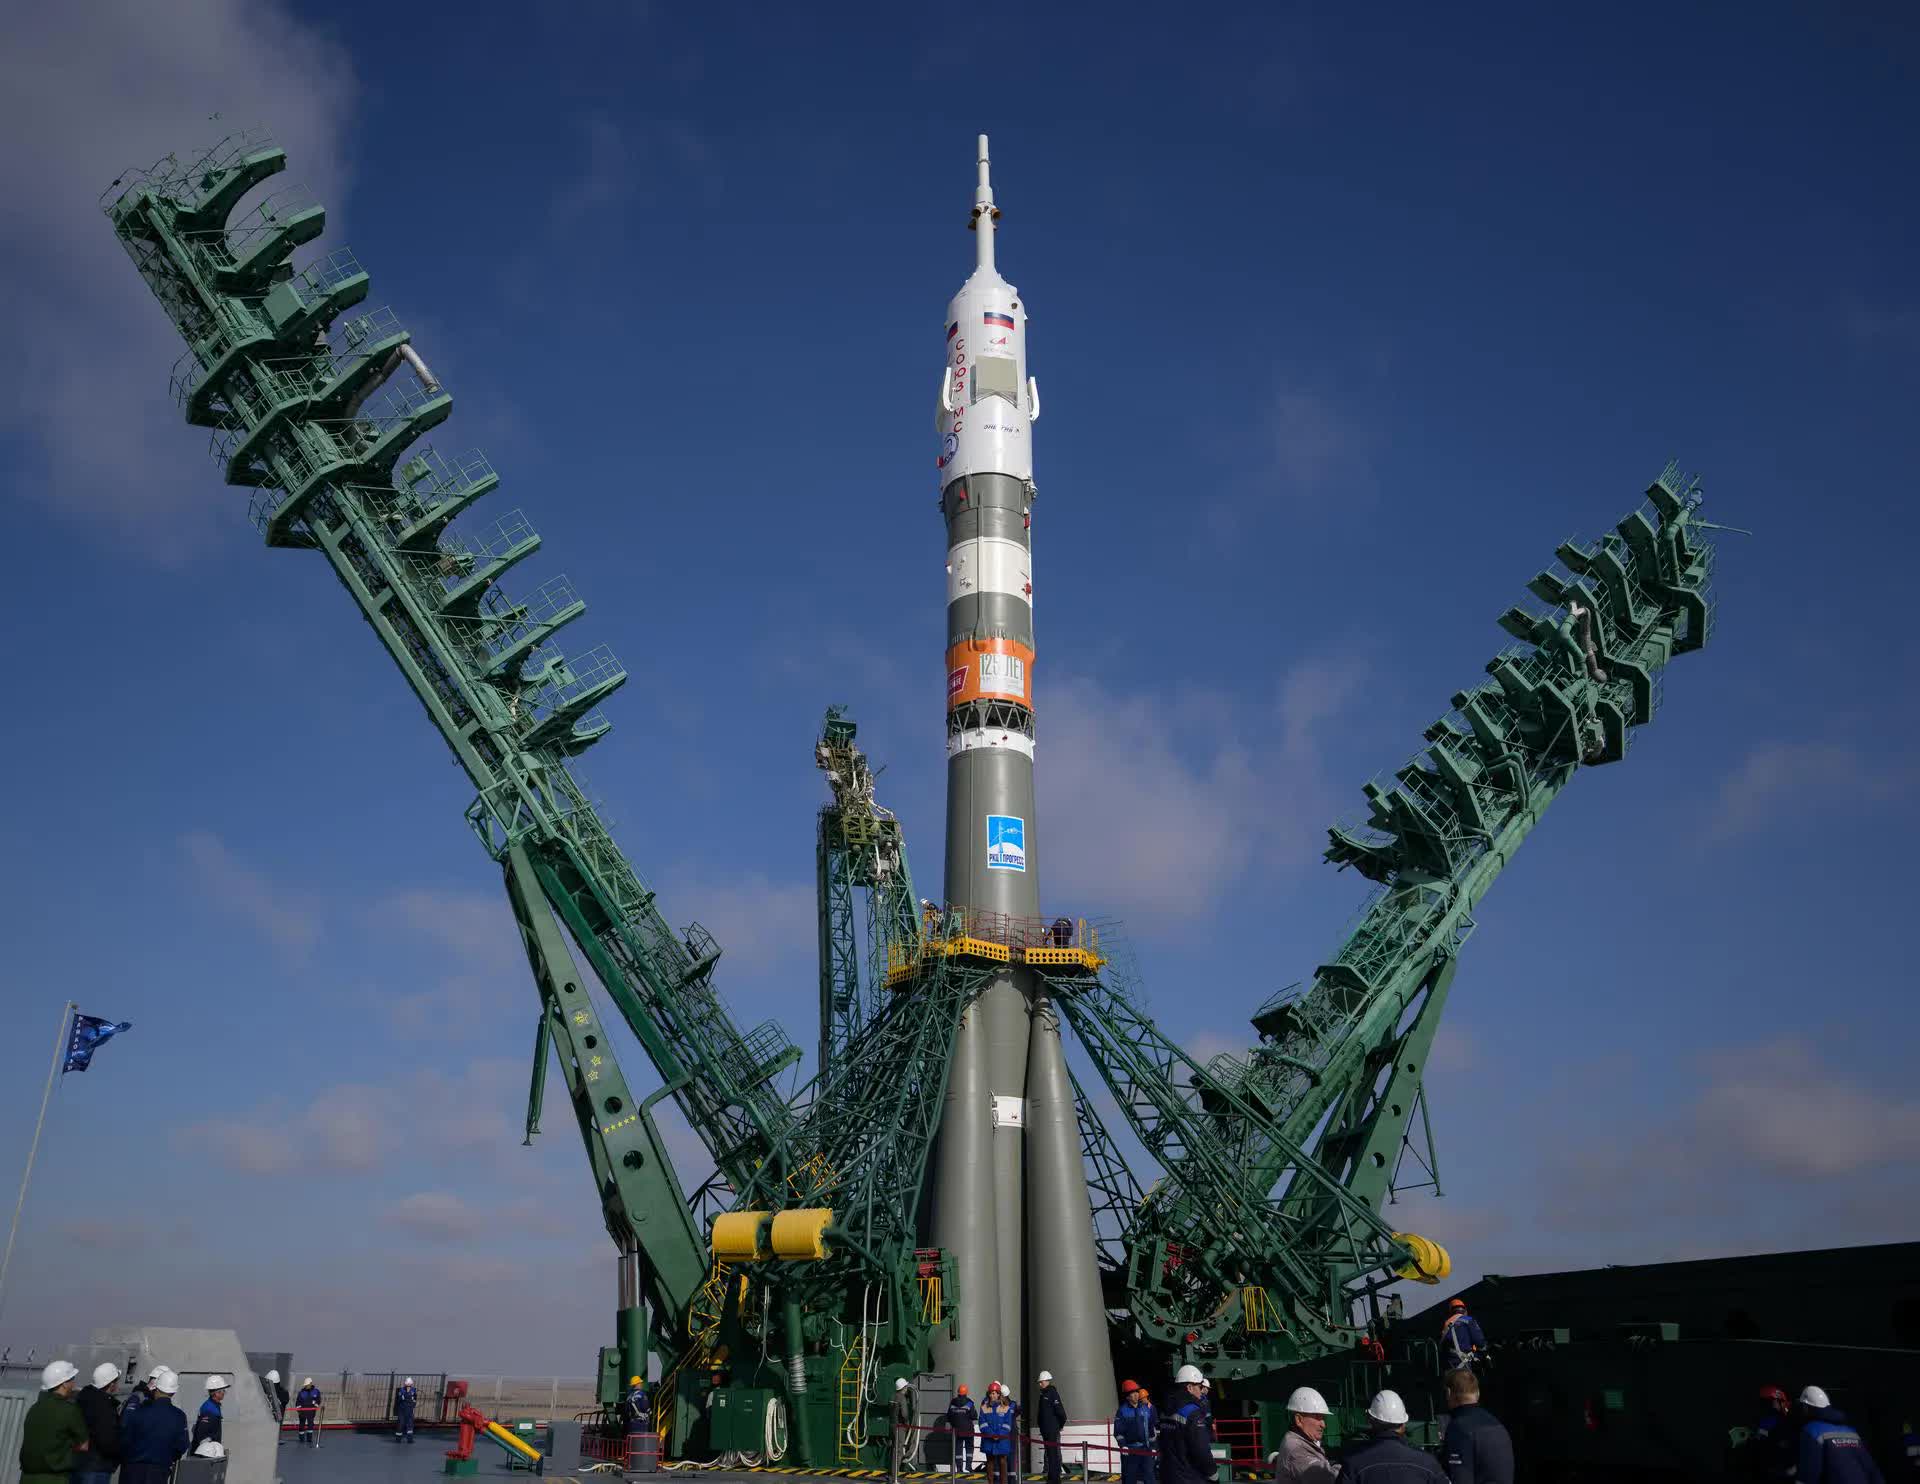 Bộ ảnh quyền lực: Nga nâng tên lửa Soyuz lên bệ, sắp có chuyến bay lịch sử - Ảnh 6.